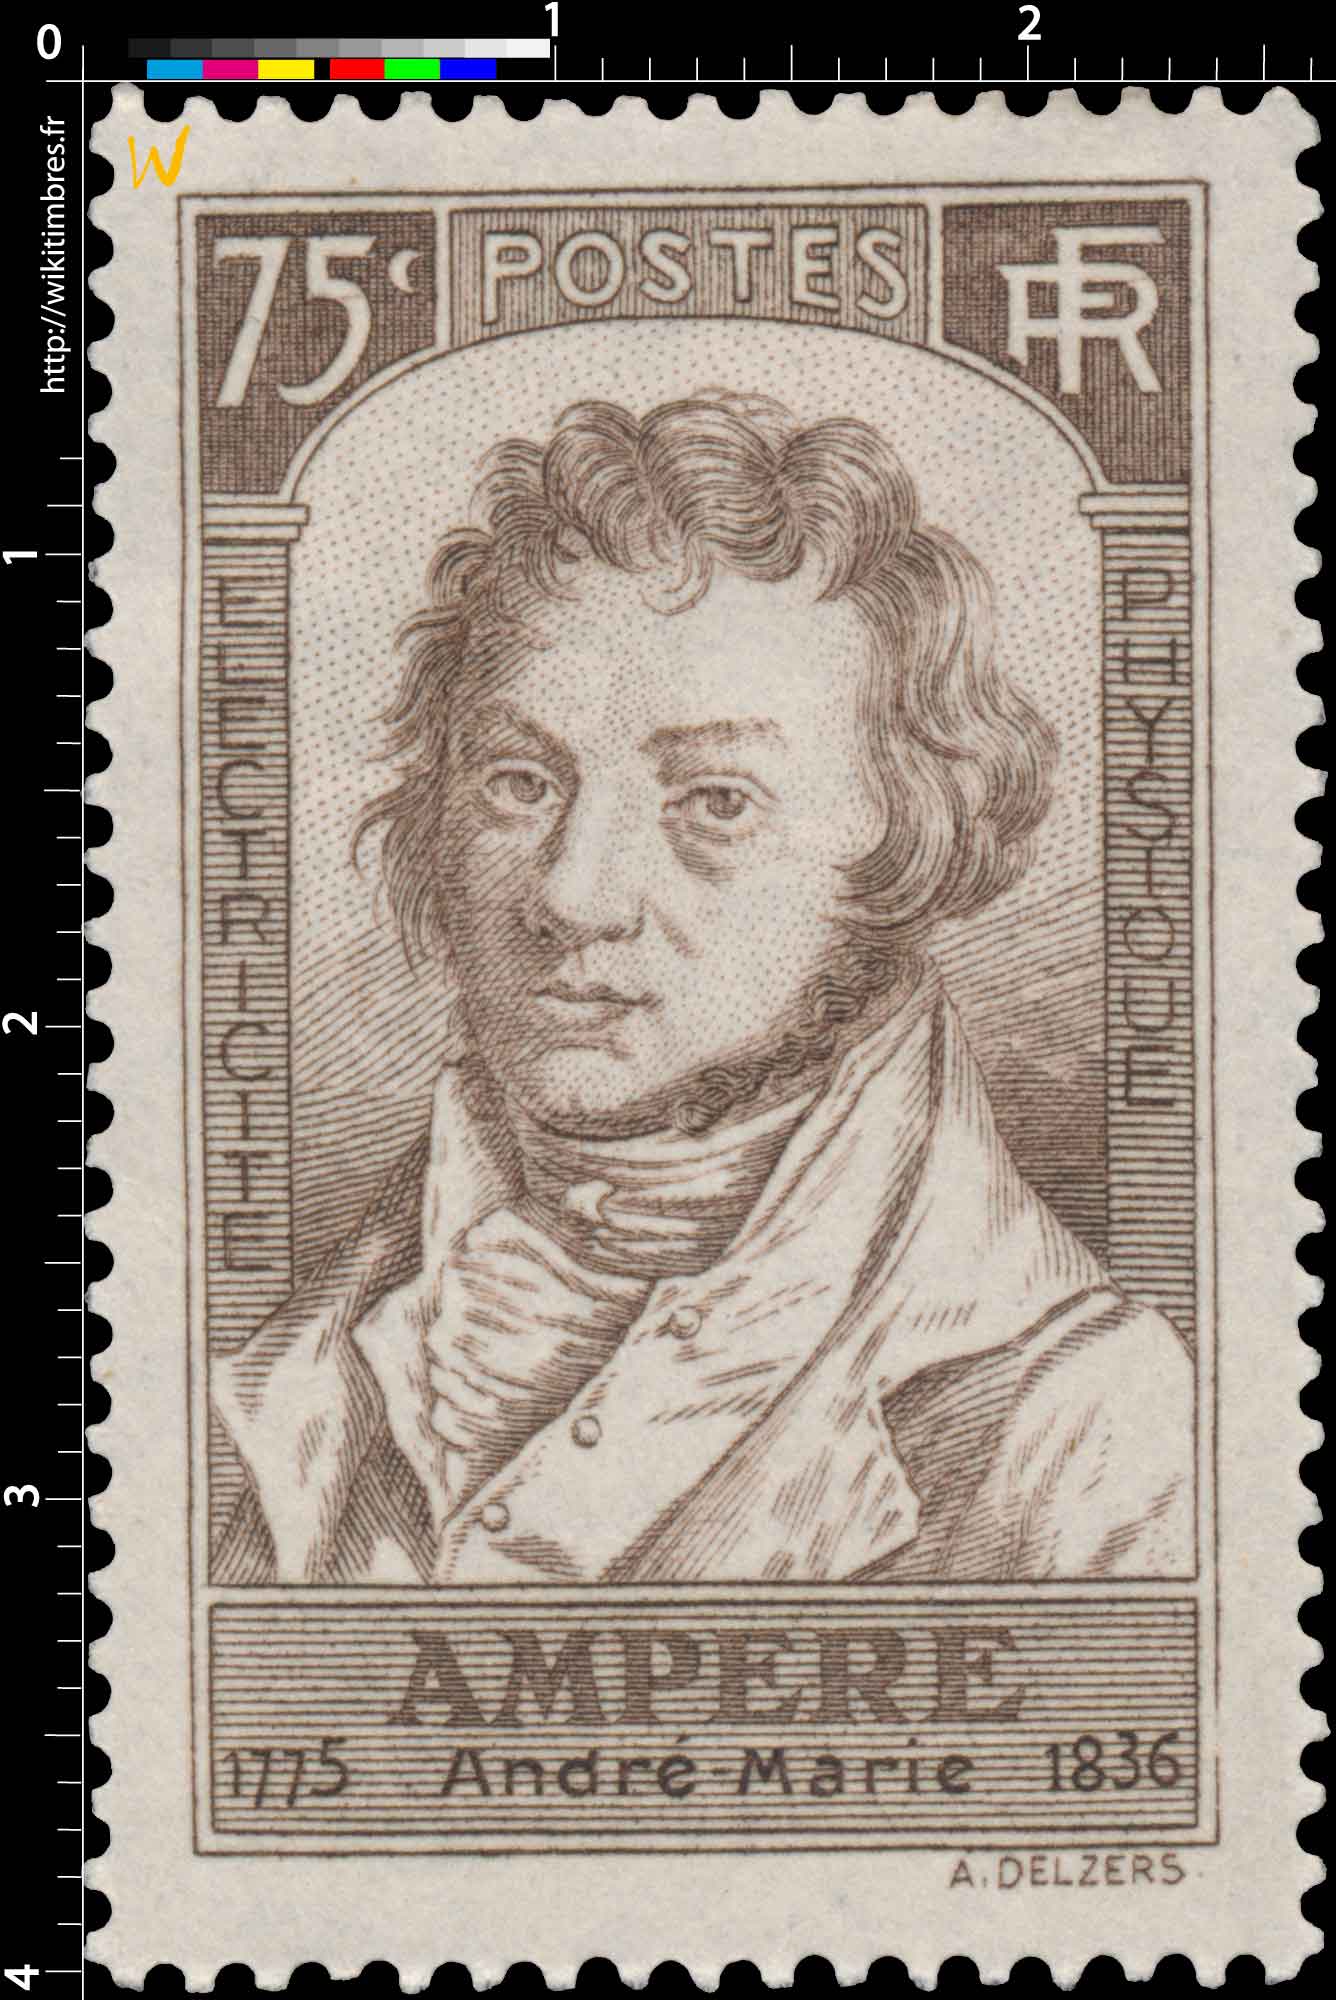 AMPÈRE André Marie 1775-1836 ÉLECTRICITÉ PHYSIQUE